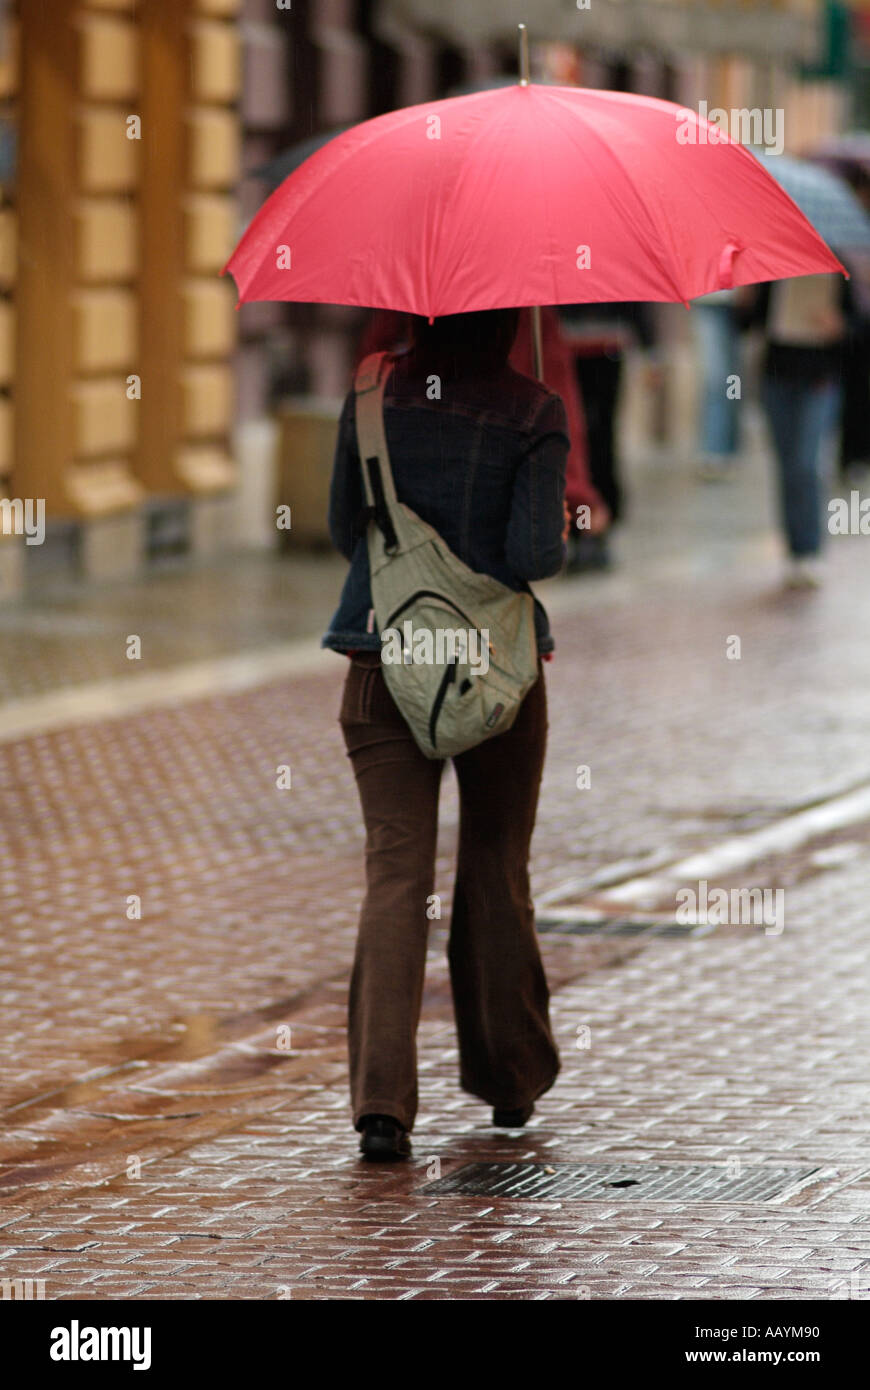 Giovane donna con un ombrello rosso in una strada trafficata in un giorno di pioggia Foto Stock